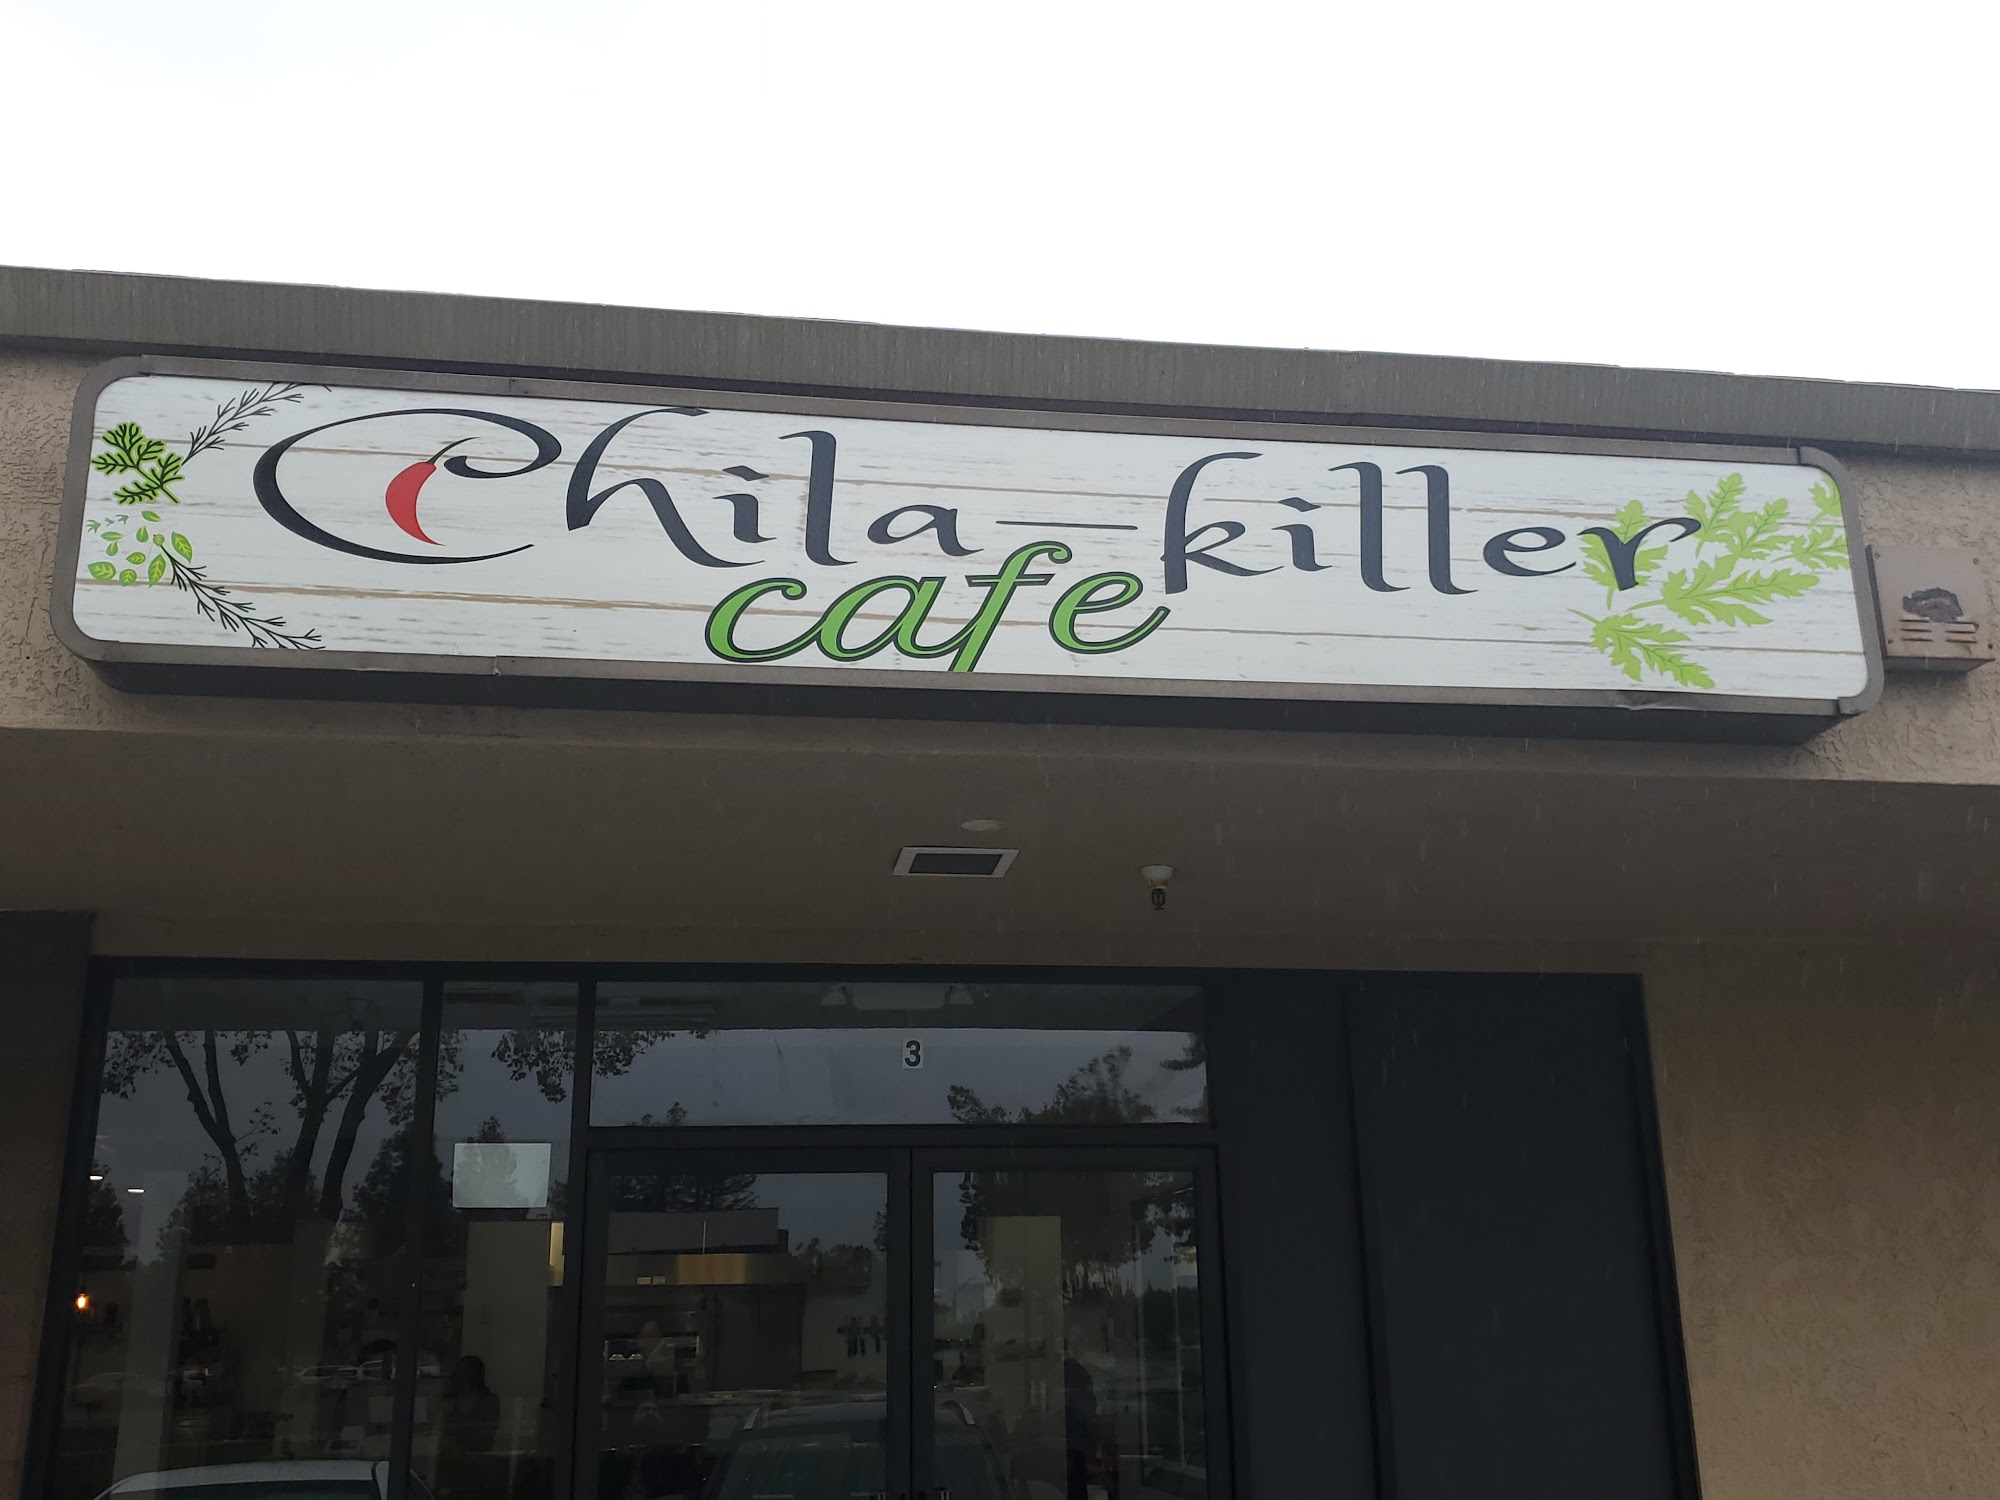 Chila-killer cafe